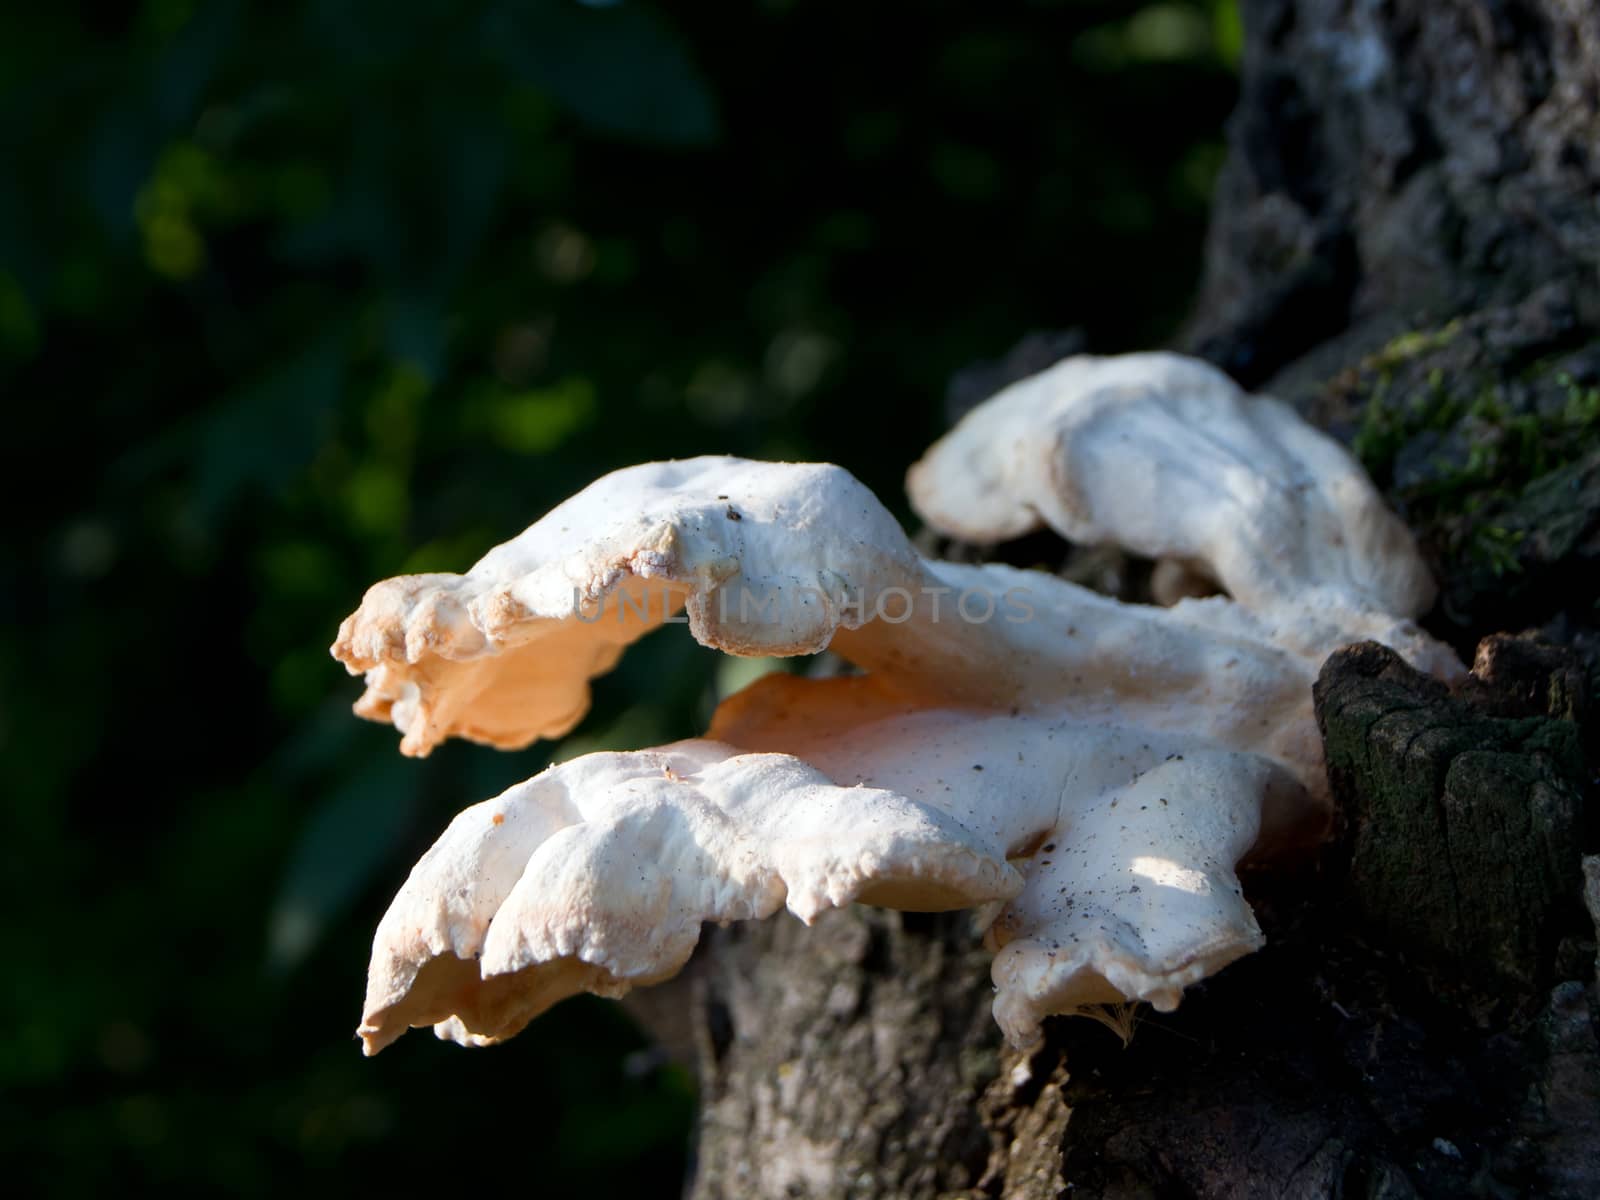 Mushrooms on the tree. by dadalia